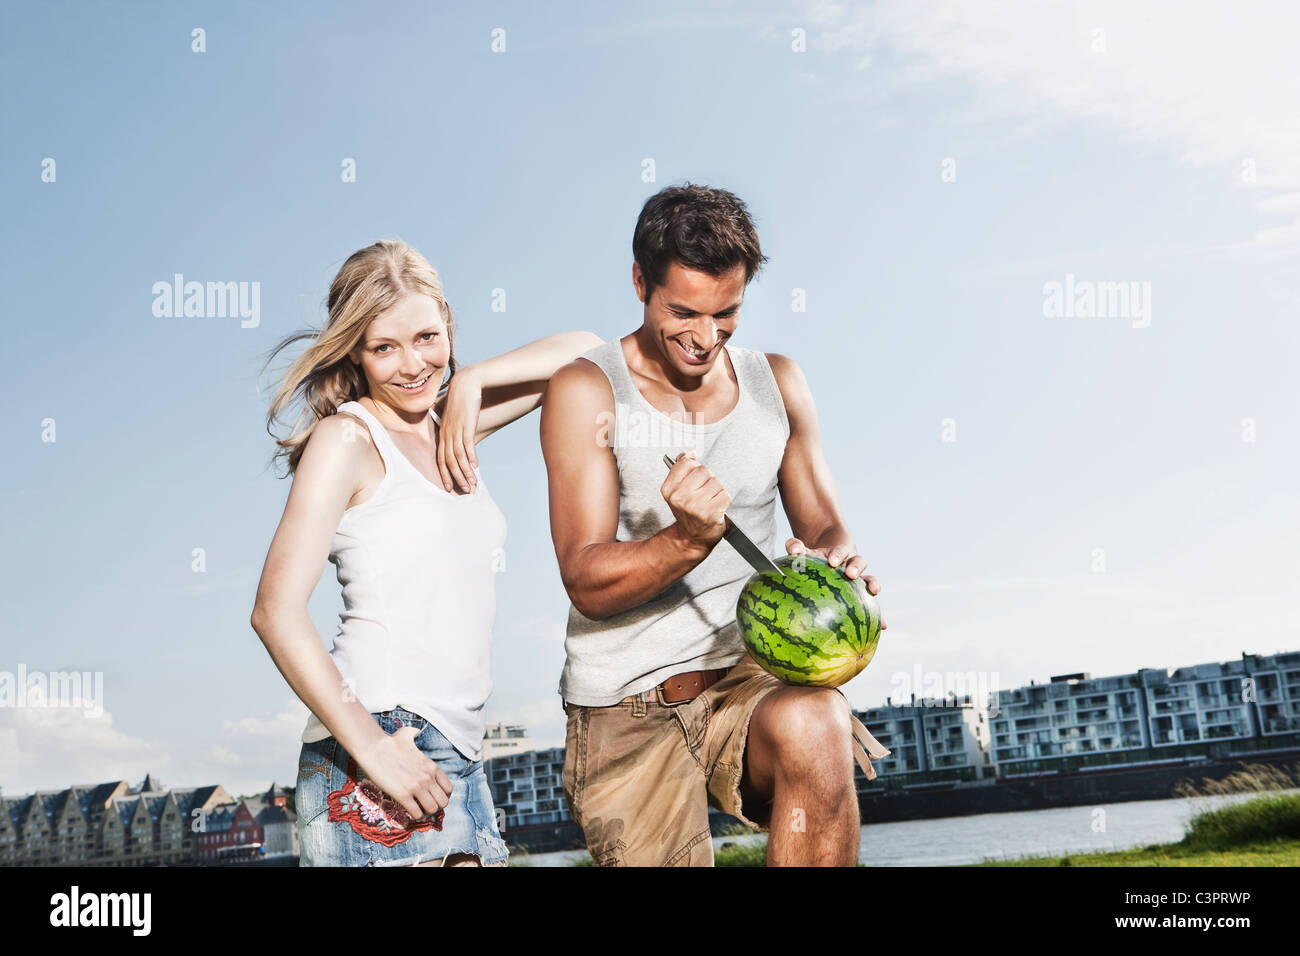 Deutschland, Köln, Mann schneiden Wassermelone, lächelnde Frau Stockfoto